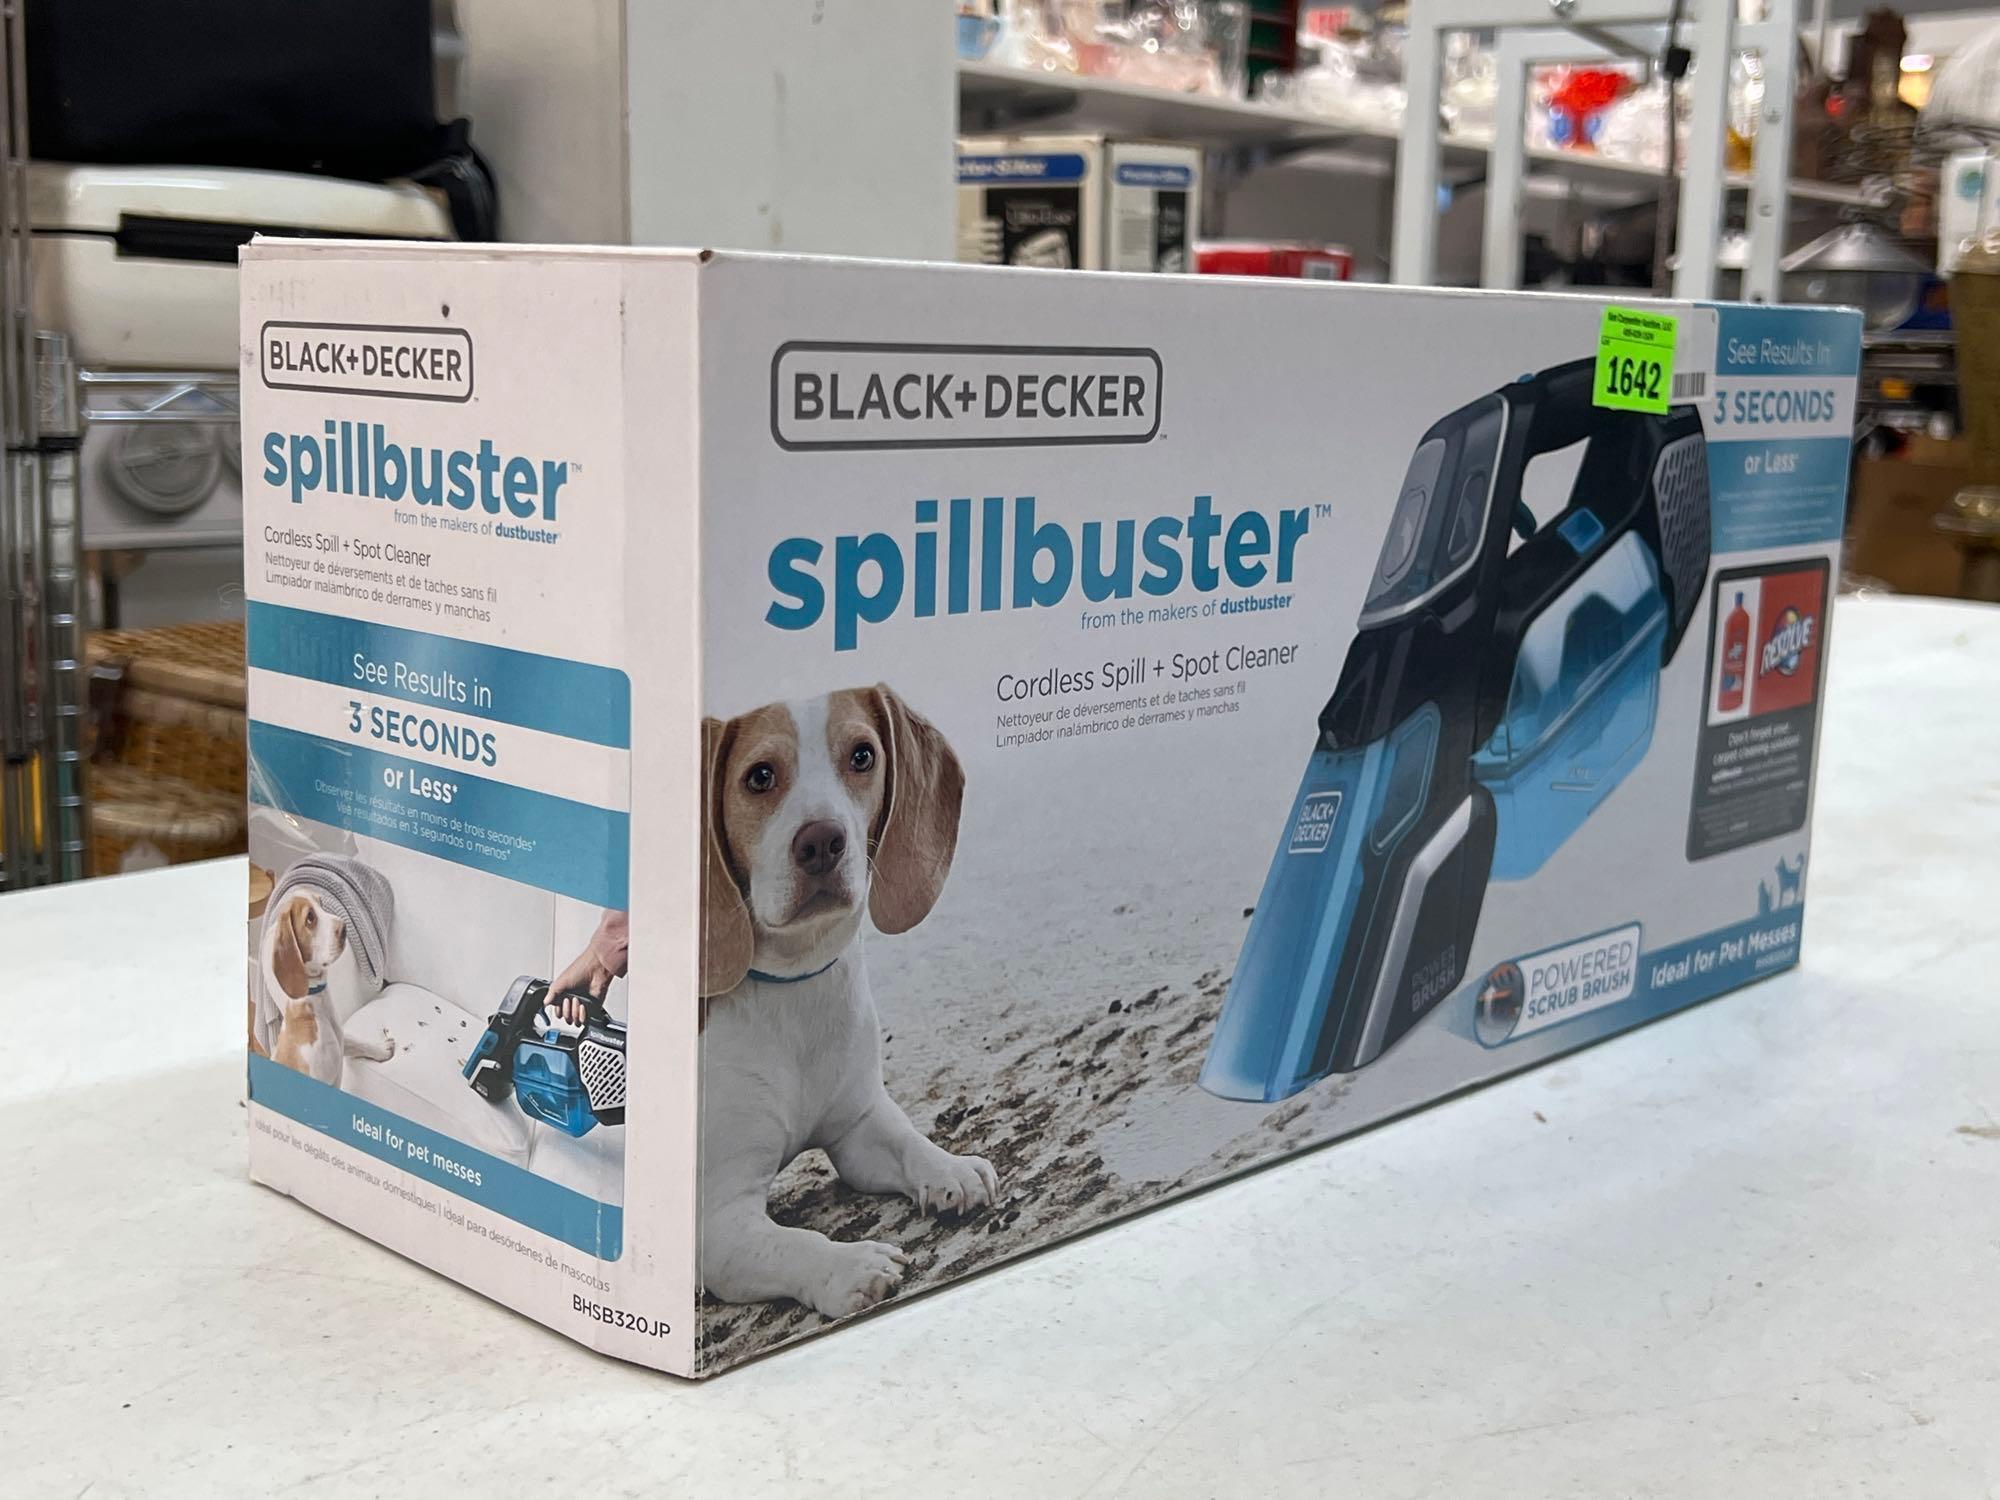 Spillbuster Handheld Cordless Spill + Spot Cleaner